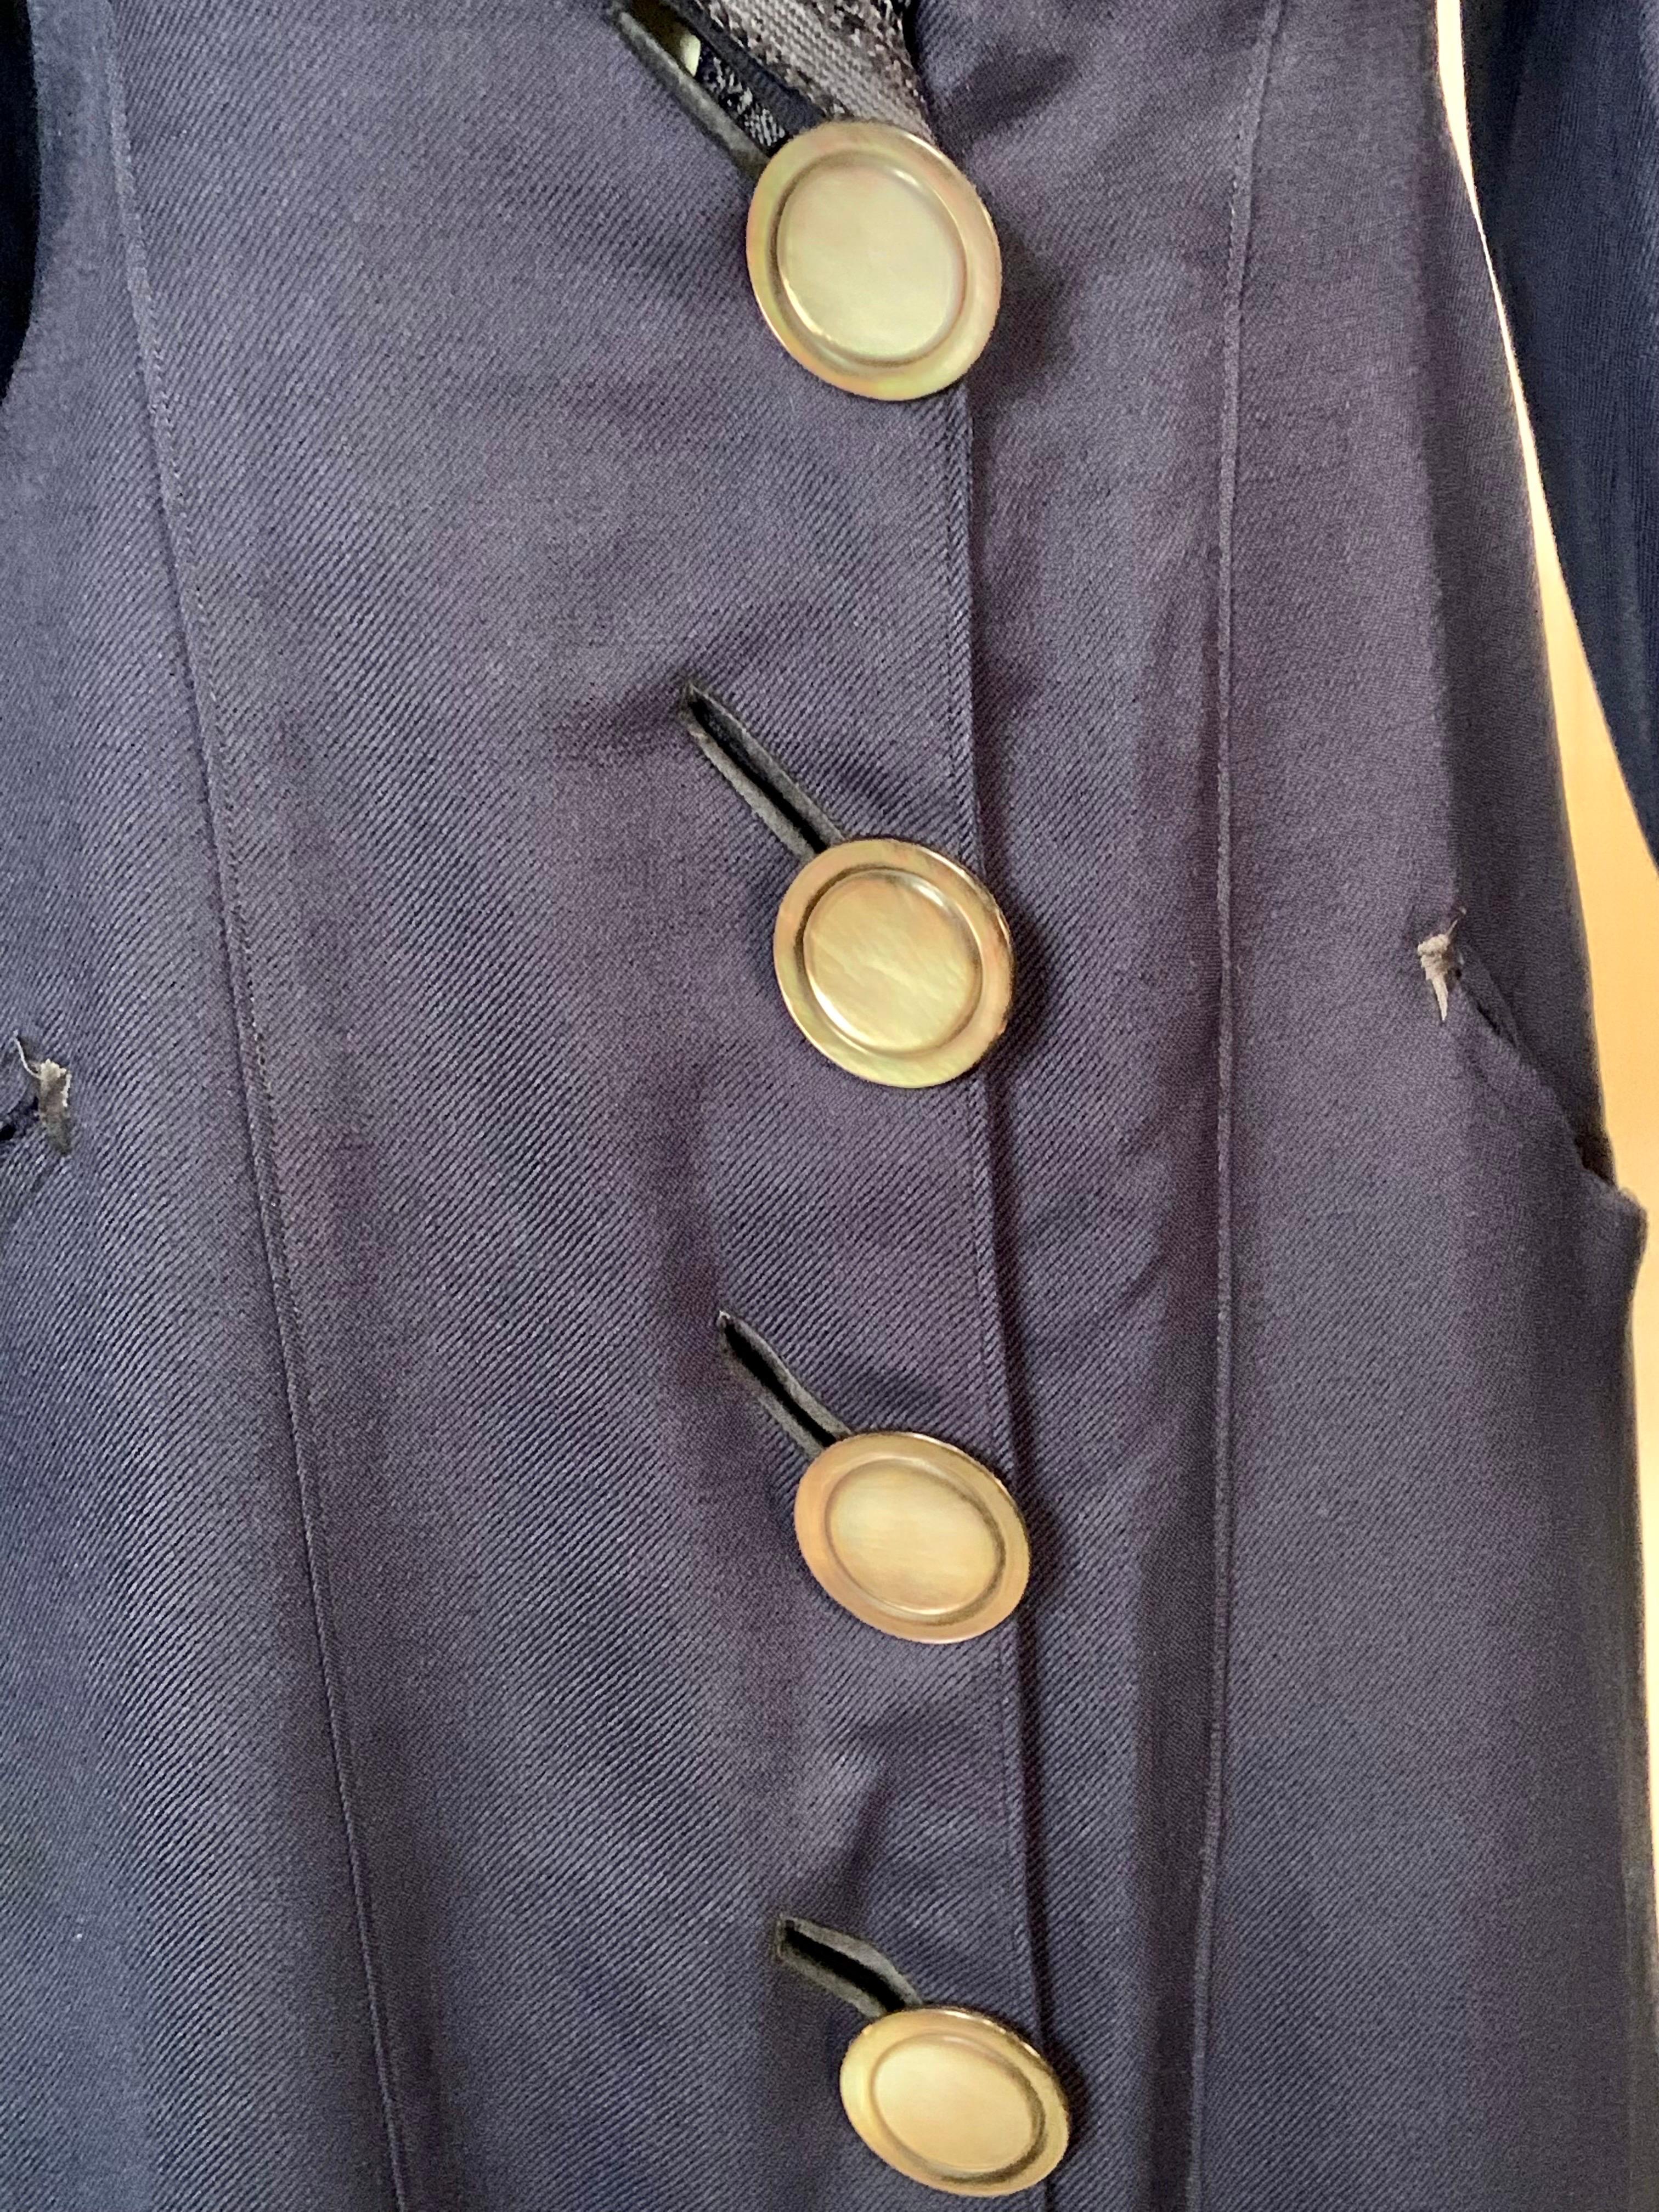 Edwardian Navy Blue Wool Coat with Braid Trim 1